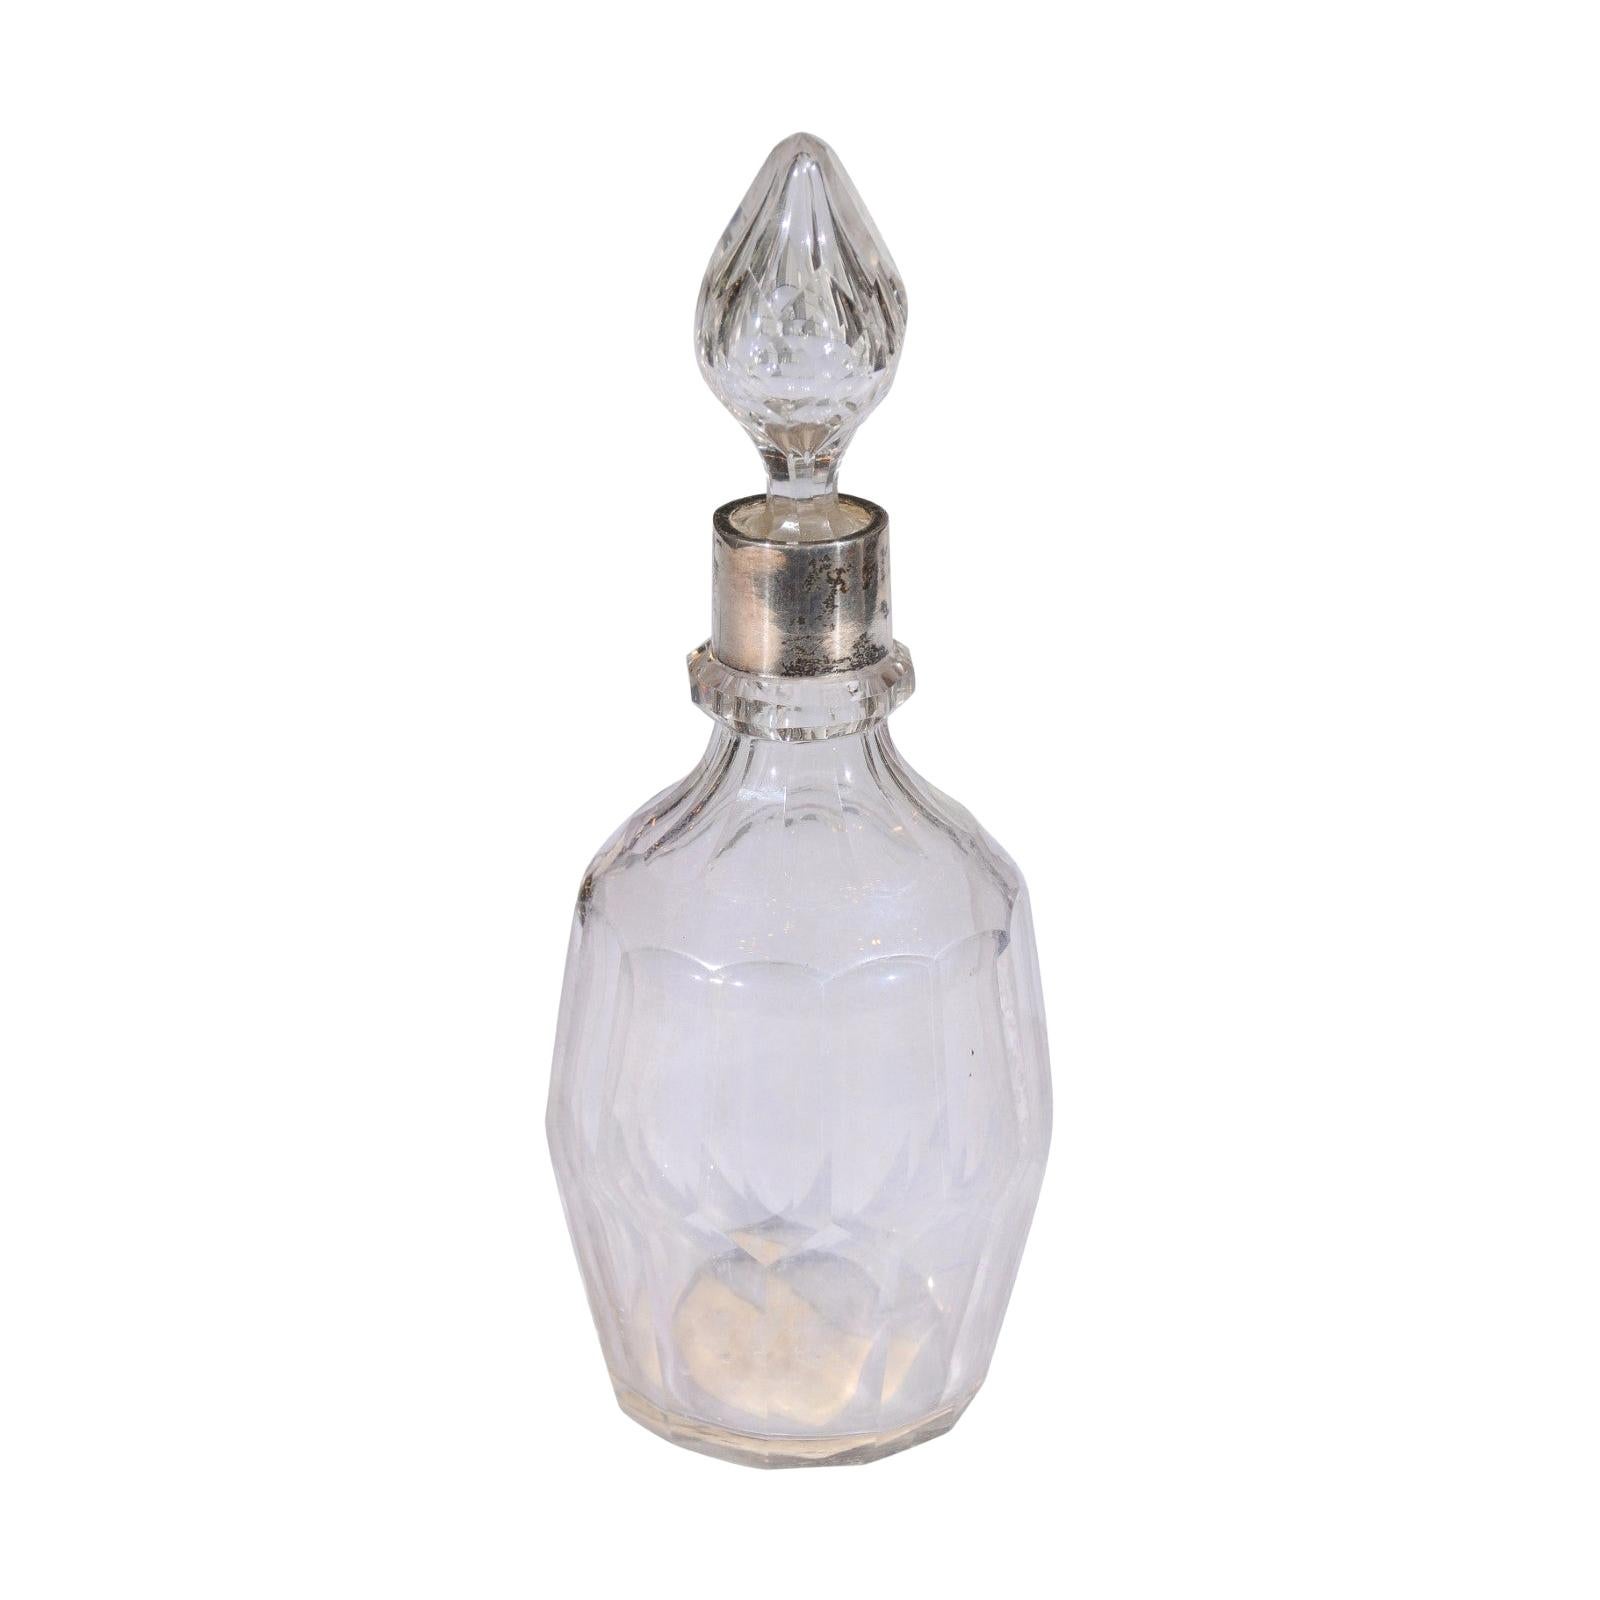 Englische Toilettenflasche aus Kristall des frühen 19. Jahrhunderts mit Stopper und silbernem Hals